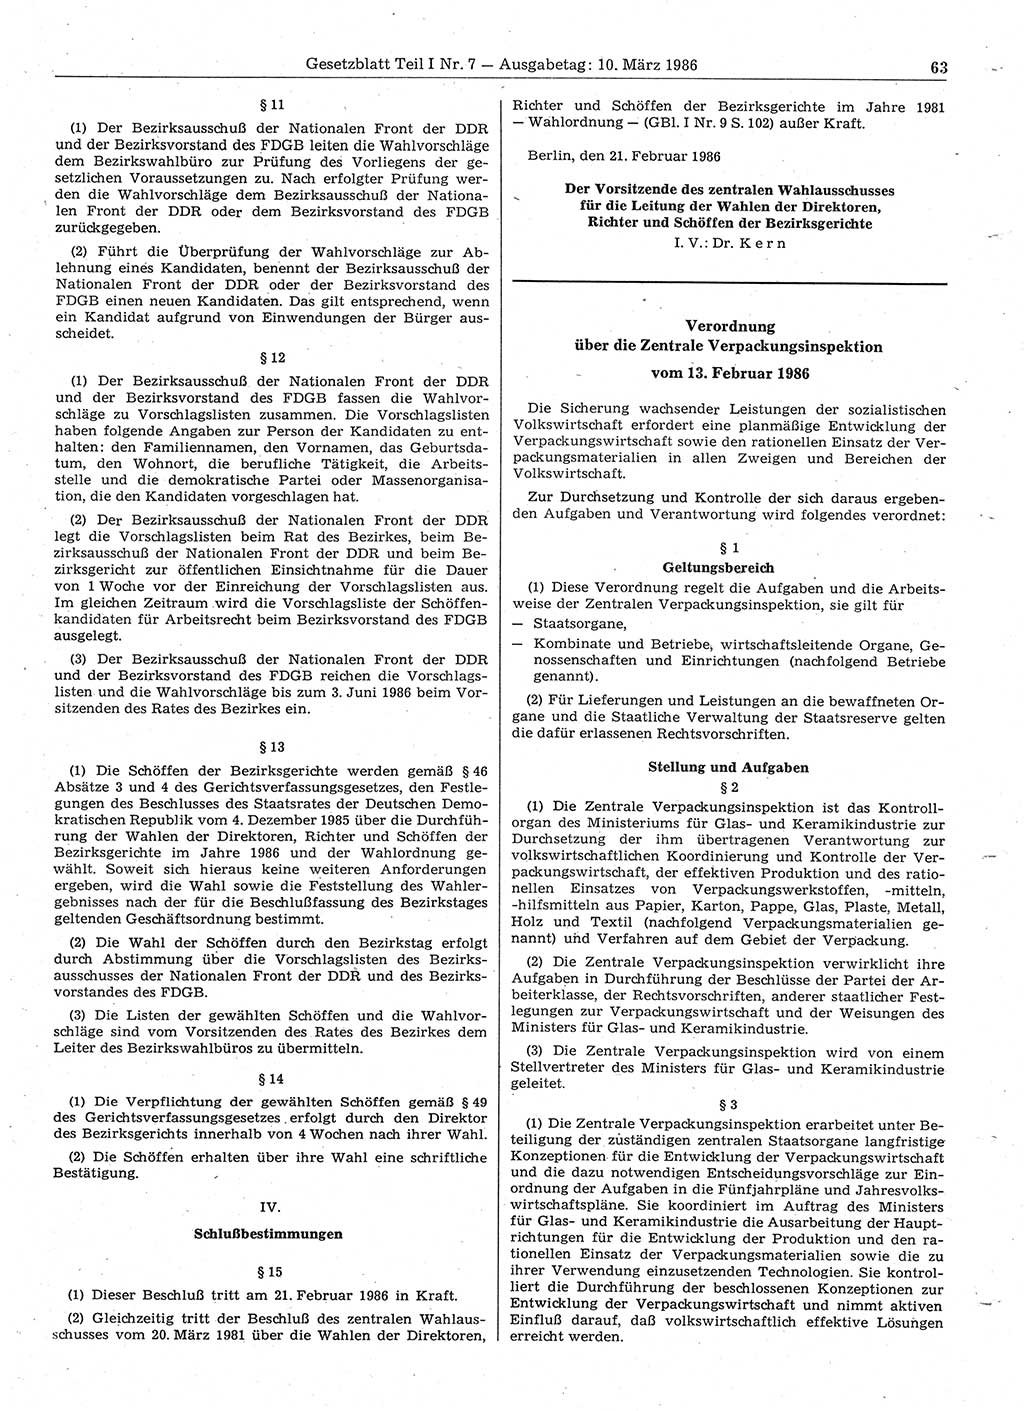 Gesetzblatt (GBl.) der Deutschen Demokratischen Republik (DDR) Teil Ⅰ 1986, Seite 63 (GBl. DDR Ⅰ 1986, S. 63)